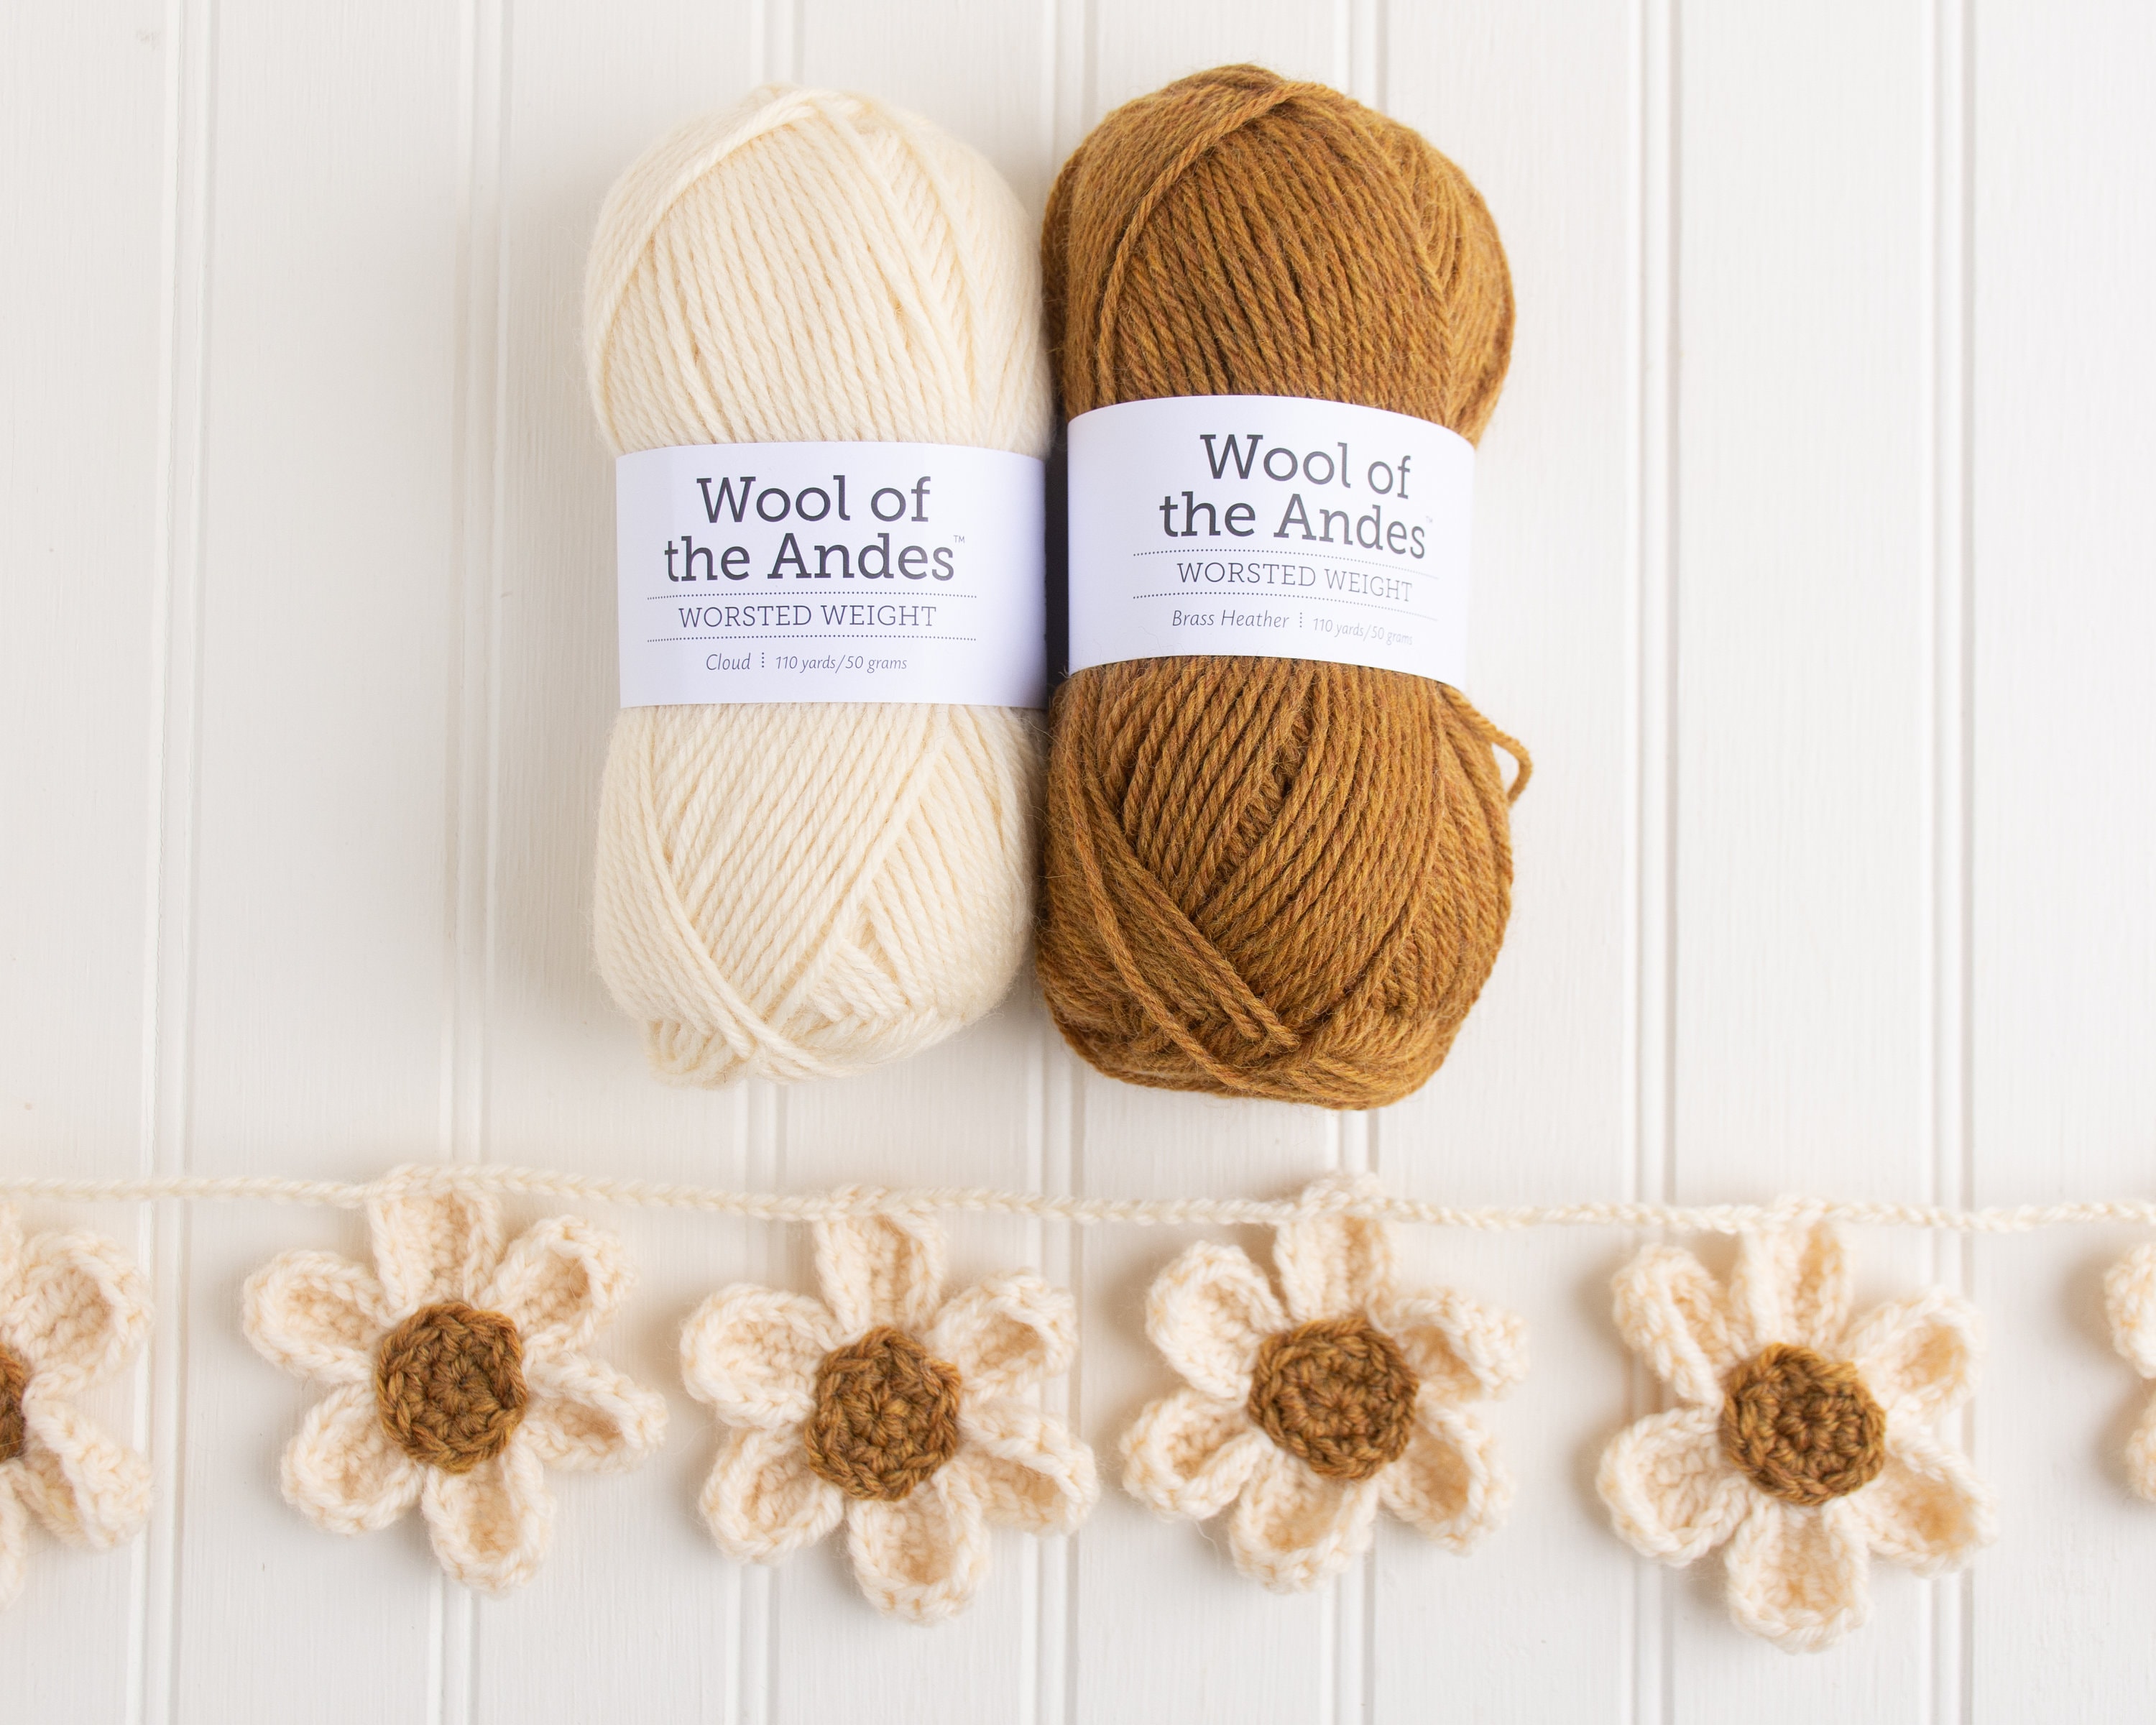 Mushroom Crochet Kit, Amigurumi Kit, Crochet Kit Beginner With Yarn,  Mushroom Crochet Pattern, Amigurumi Crochet Pattern, Toadstool Crochet 